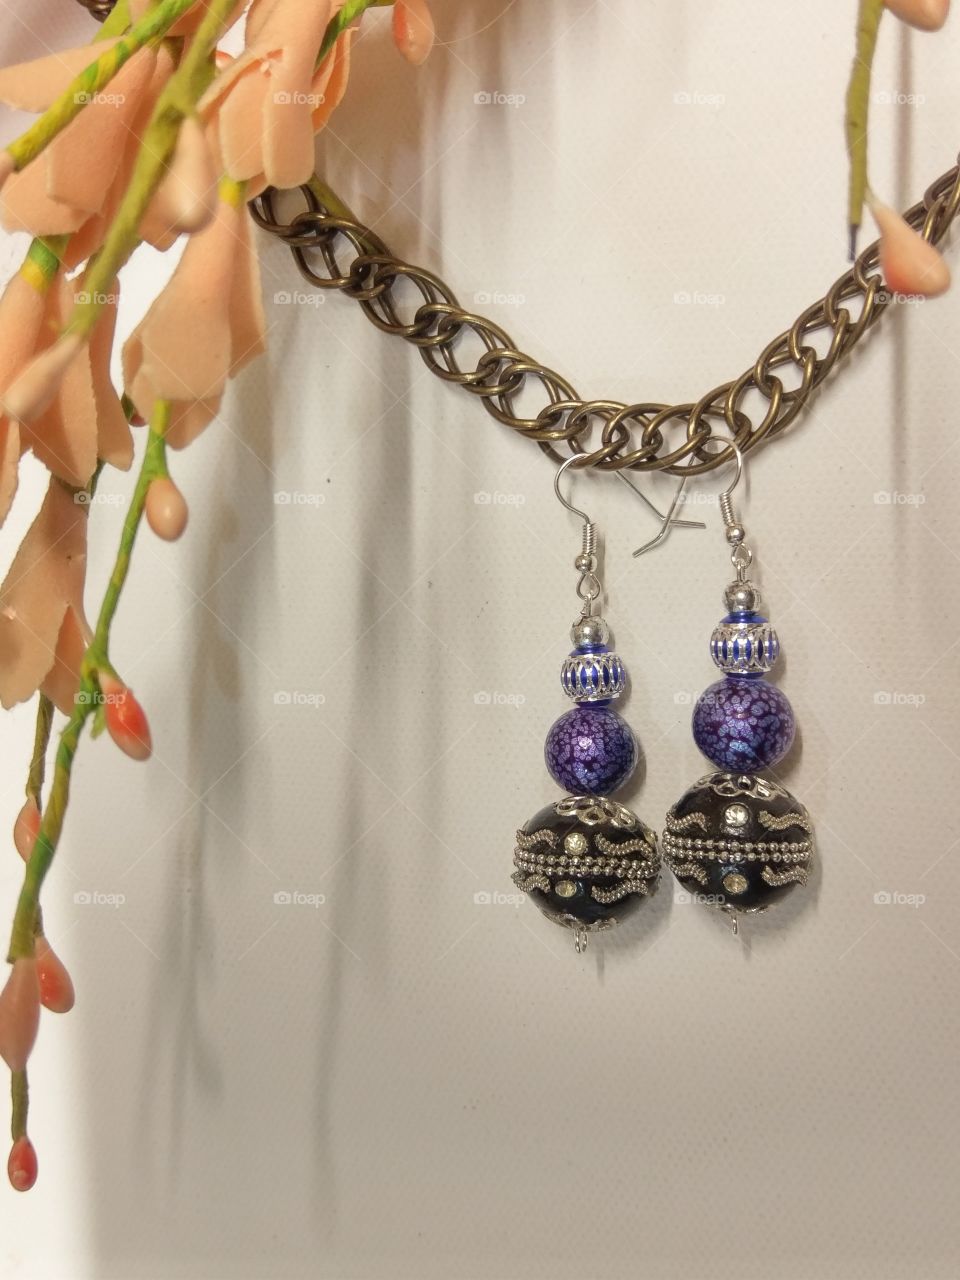 ornate earrings